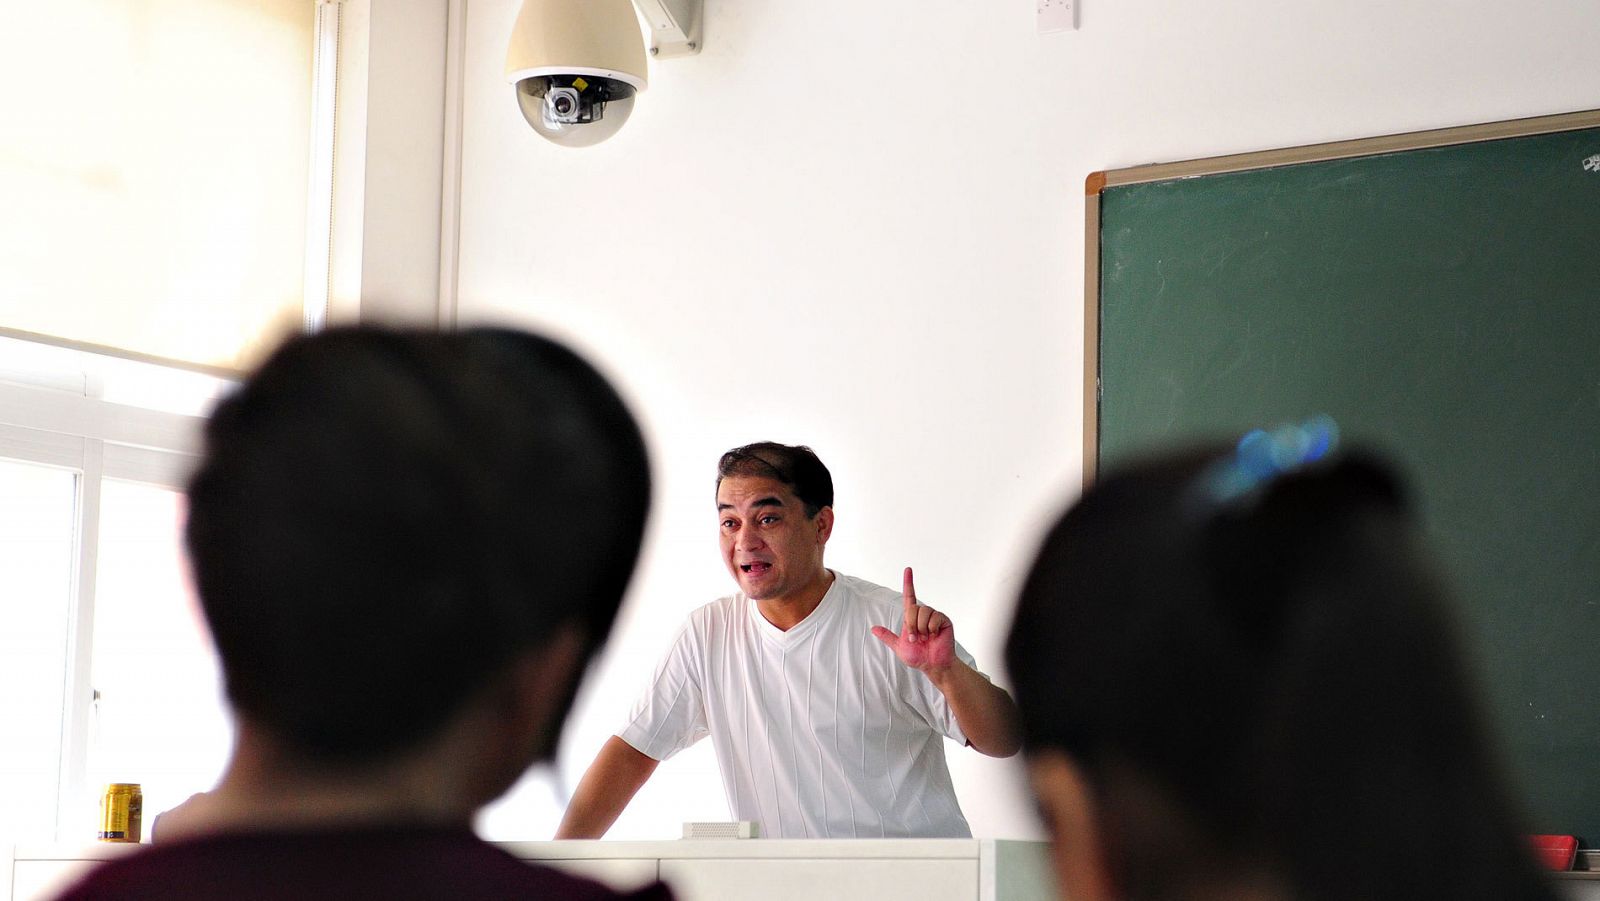 El catedrático uigur Ilham Tohti, galardonado con el premio Sájarov, en una imagen de 2010